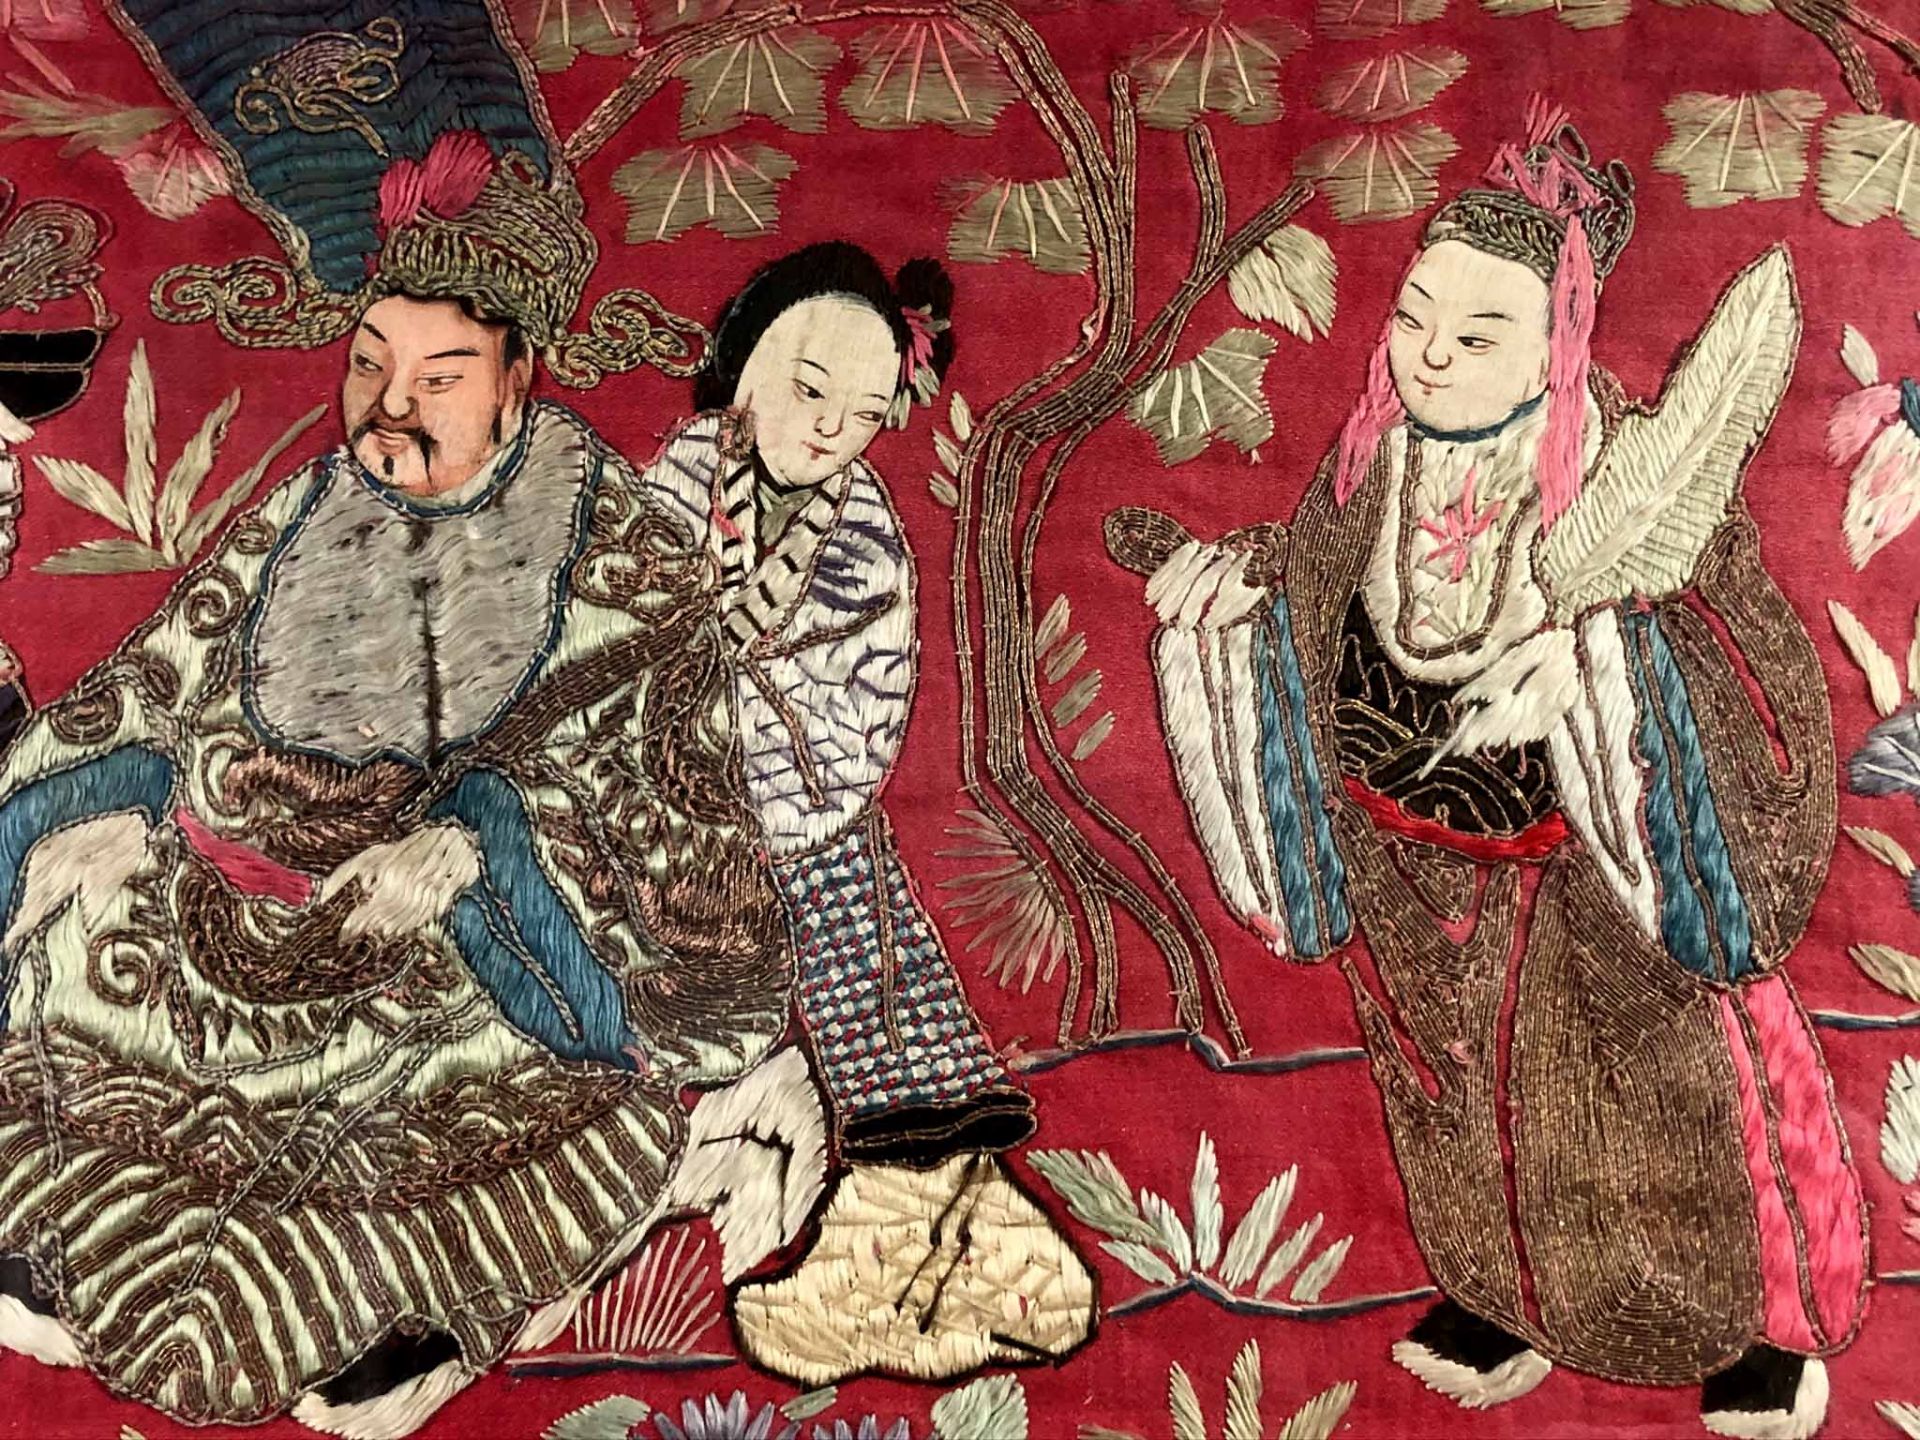 Behang. Seidenstickerei, Stumpwork. Wohl China 19. Jahrhundert.91,5 cm x 98 cm sichtbar. Hinten - Bild 2 aus 14